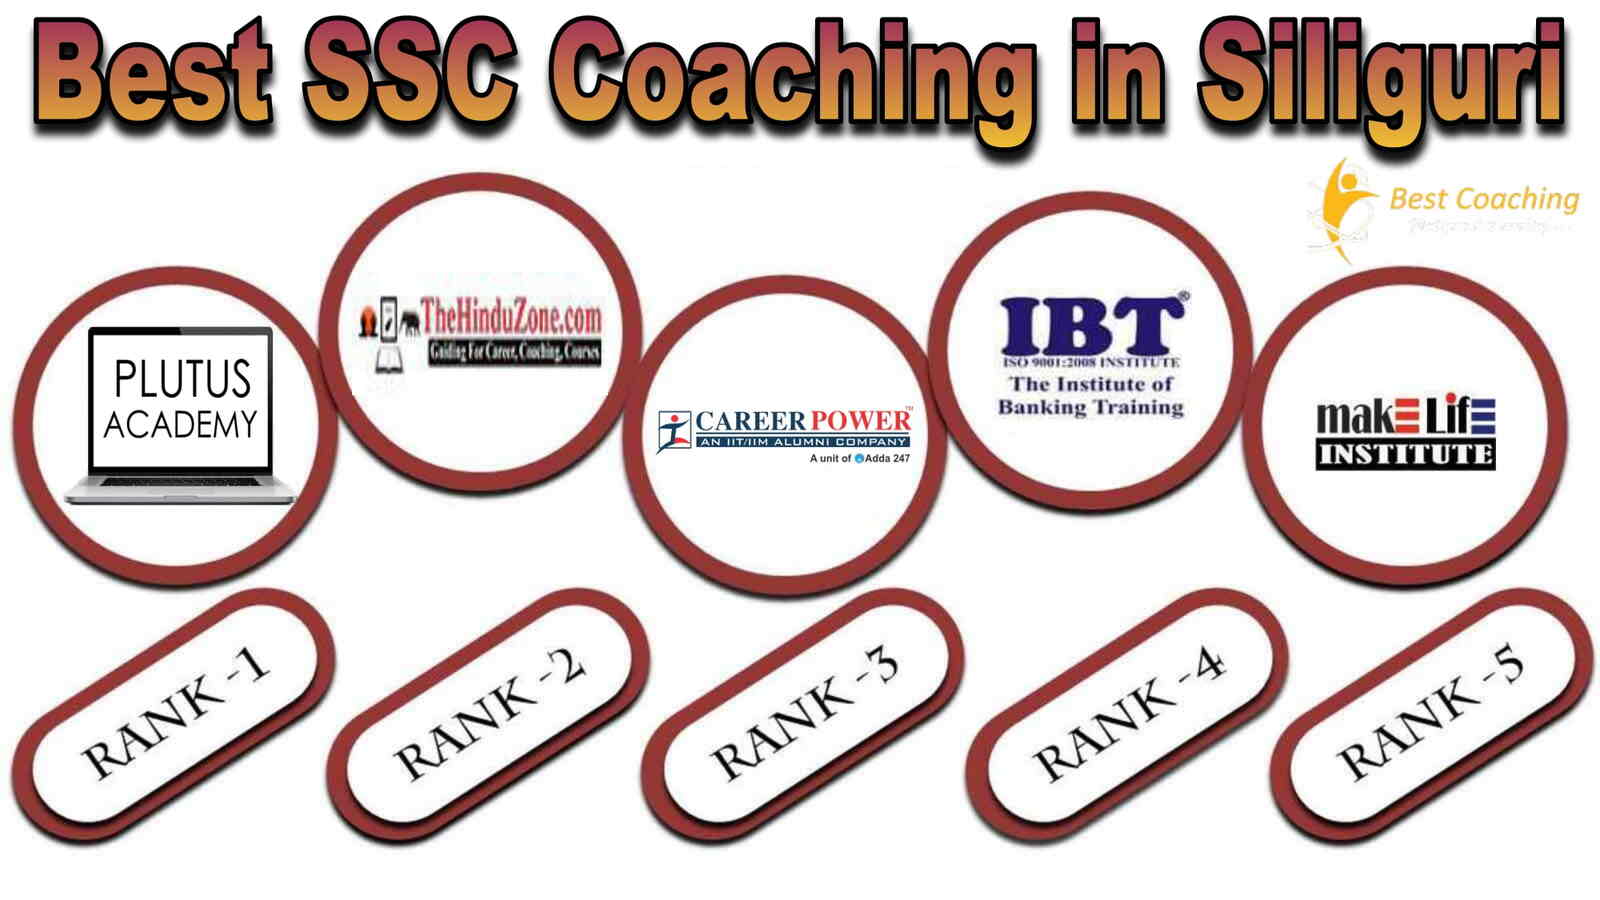 Best SSC Coaching in Siliguri